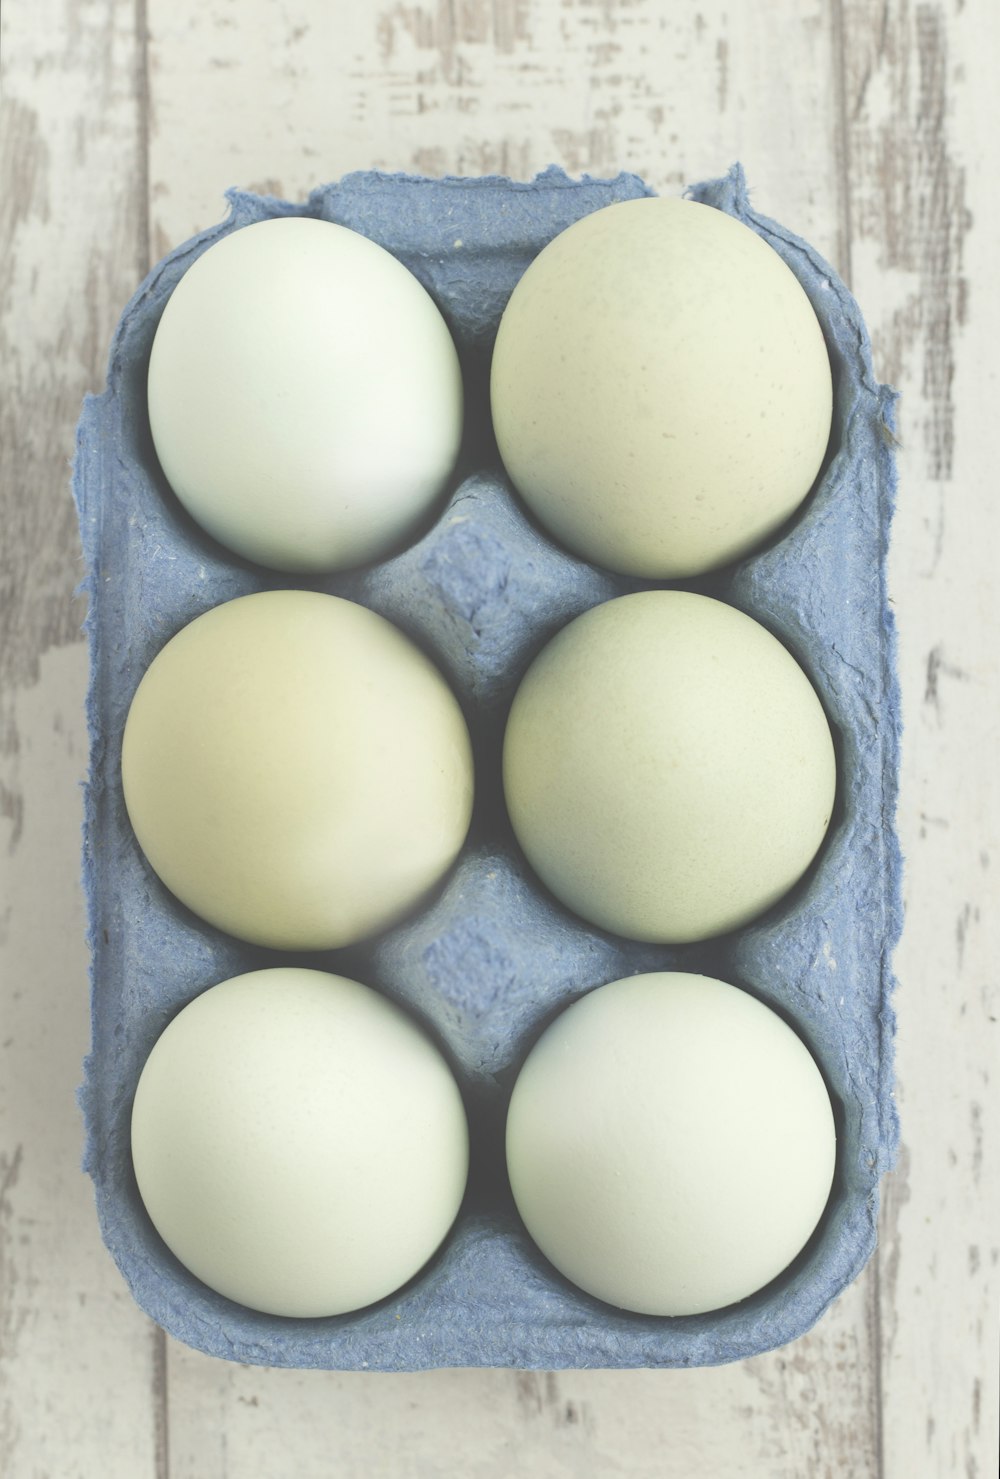 灰色のトレイに置かれた6つの白い卵